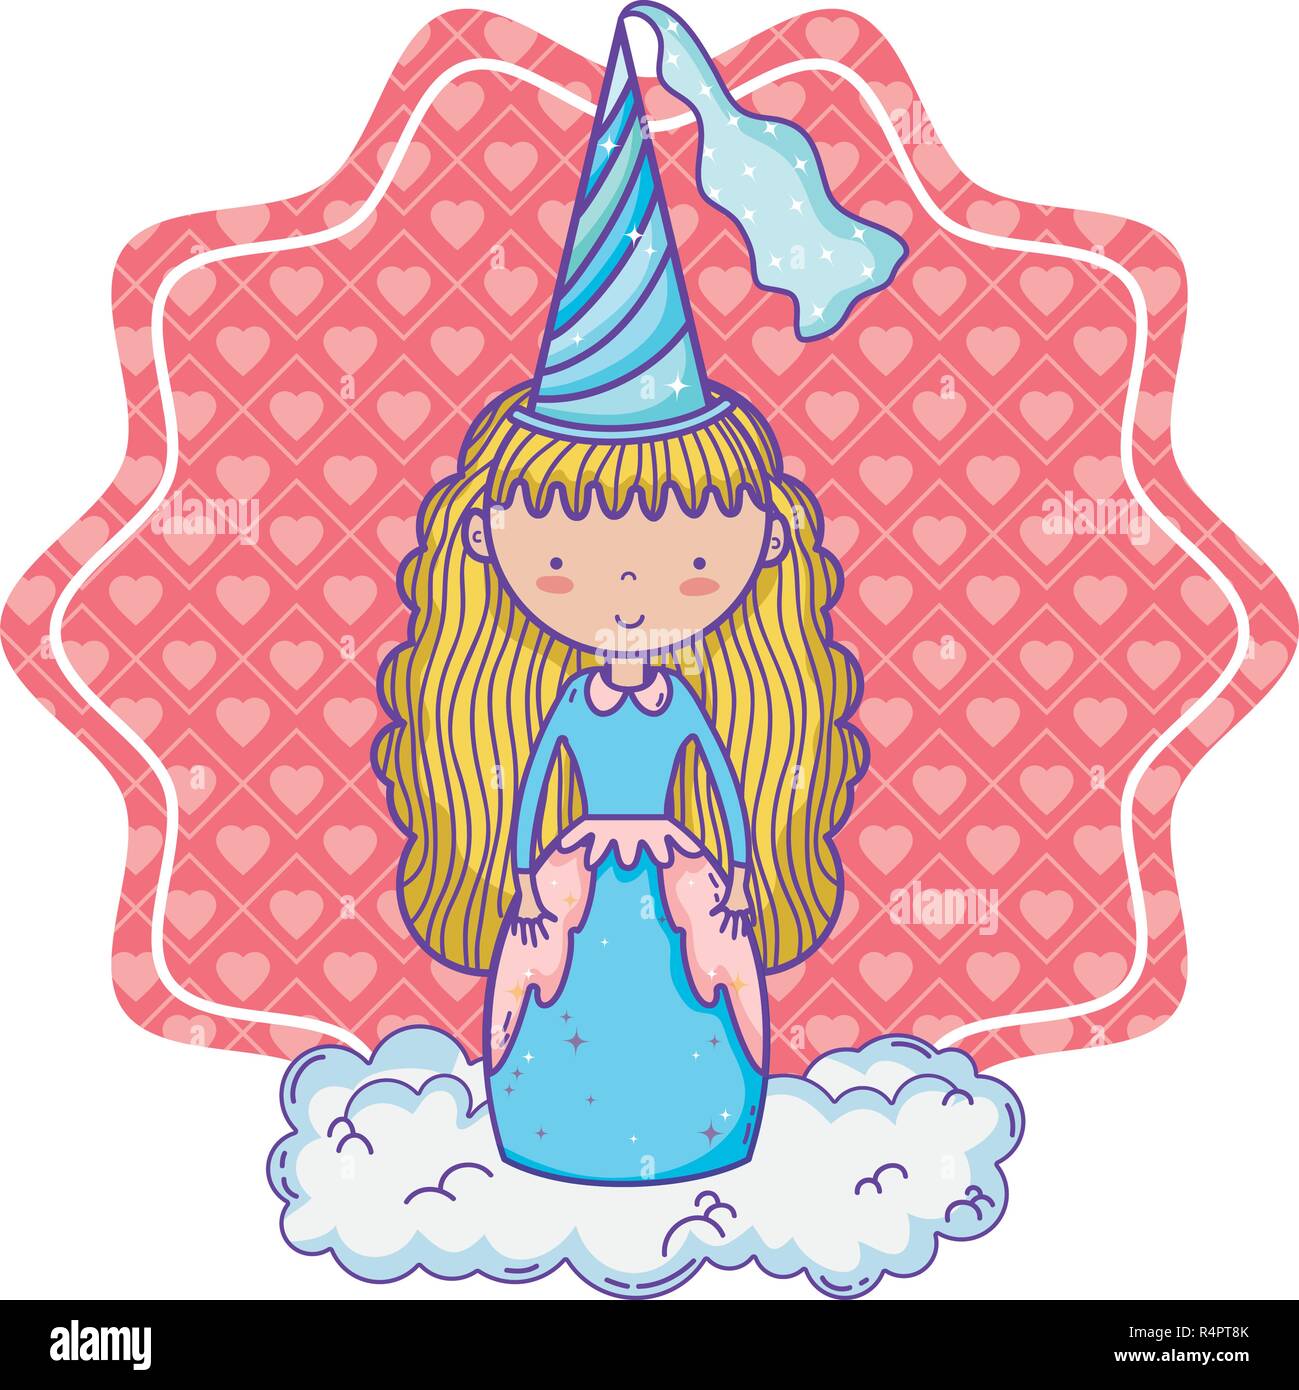 Gorros de cumpleaños - princesas mágicas – Que linda es mi Fiesta